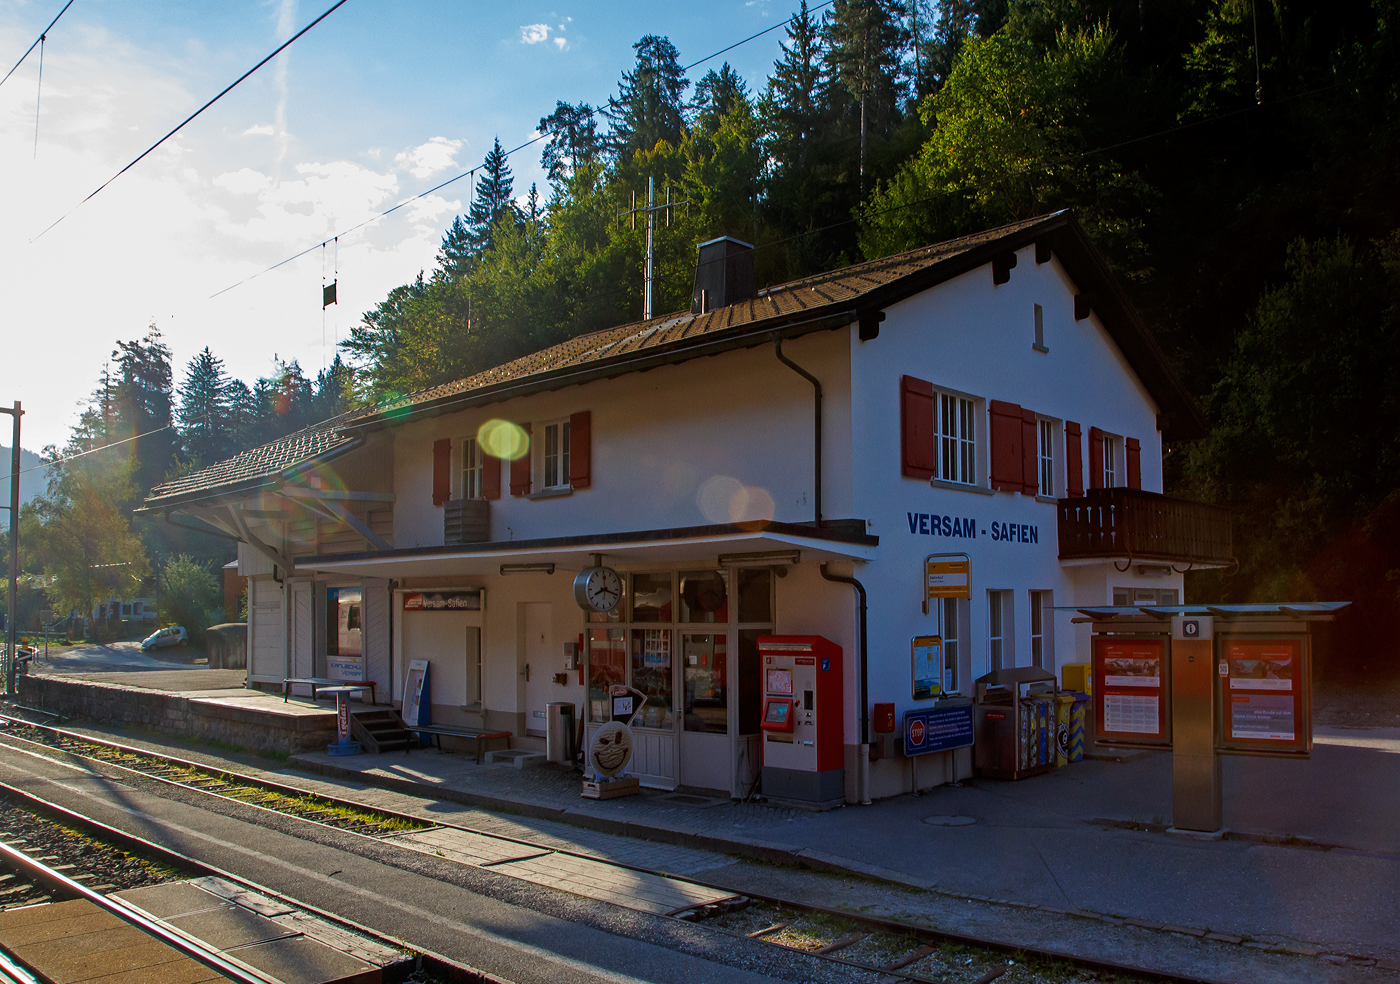 Der gemeinsame RhB Bahnhof Versam - Safien in der Rheinschlucht (Ruinaulta) am 07 September 2021, aus einem RhB-Zug heraus.

Die wohl mit 3,7 km längste und spektakulärste Bahnhofstraße verbindet das Dorf Versam mit dem Bahnhof Versam - Safien, welcher mitten in der Rheinschlucht liegt. Das Dorf Safien liegt noch viel weiter weg.